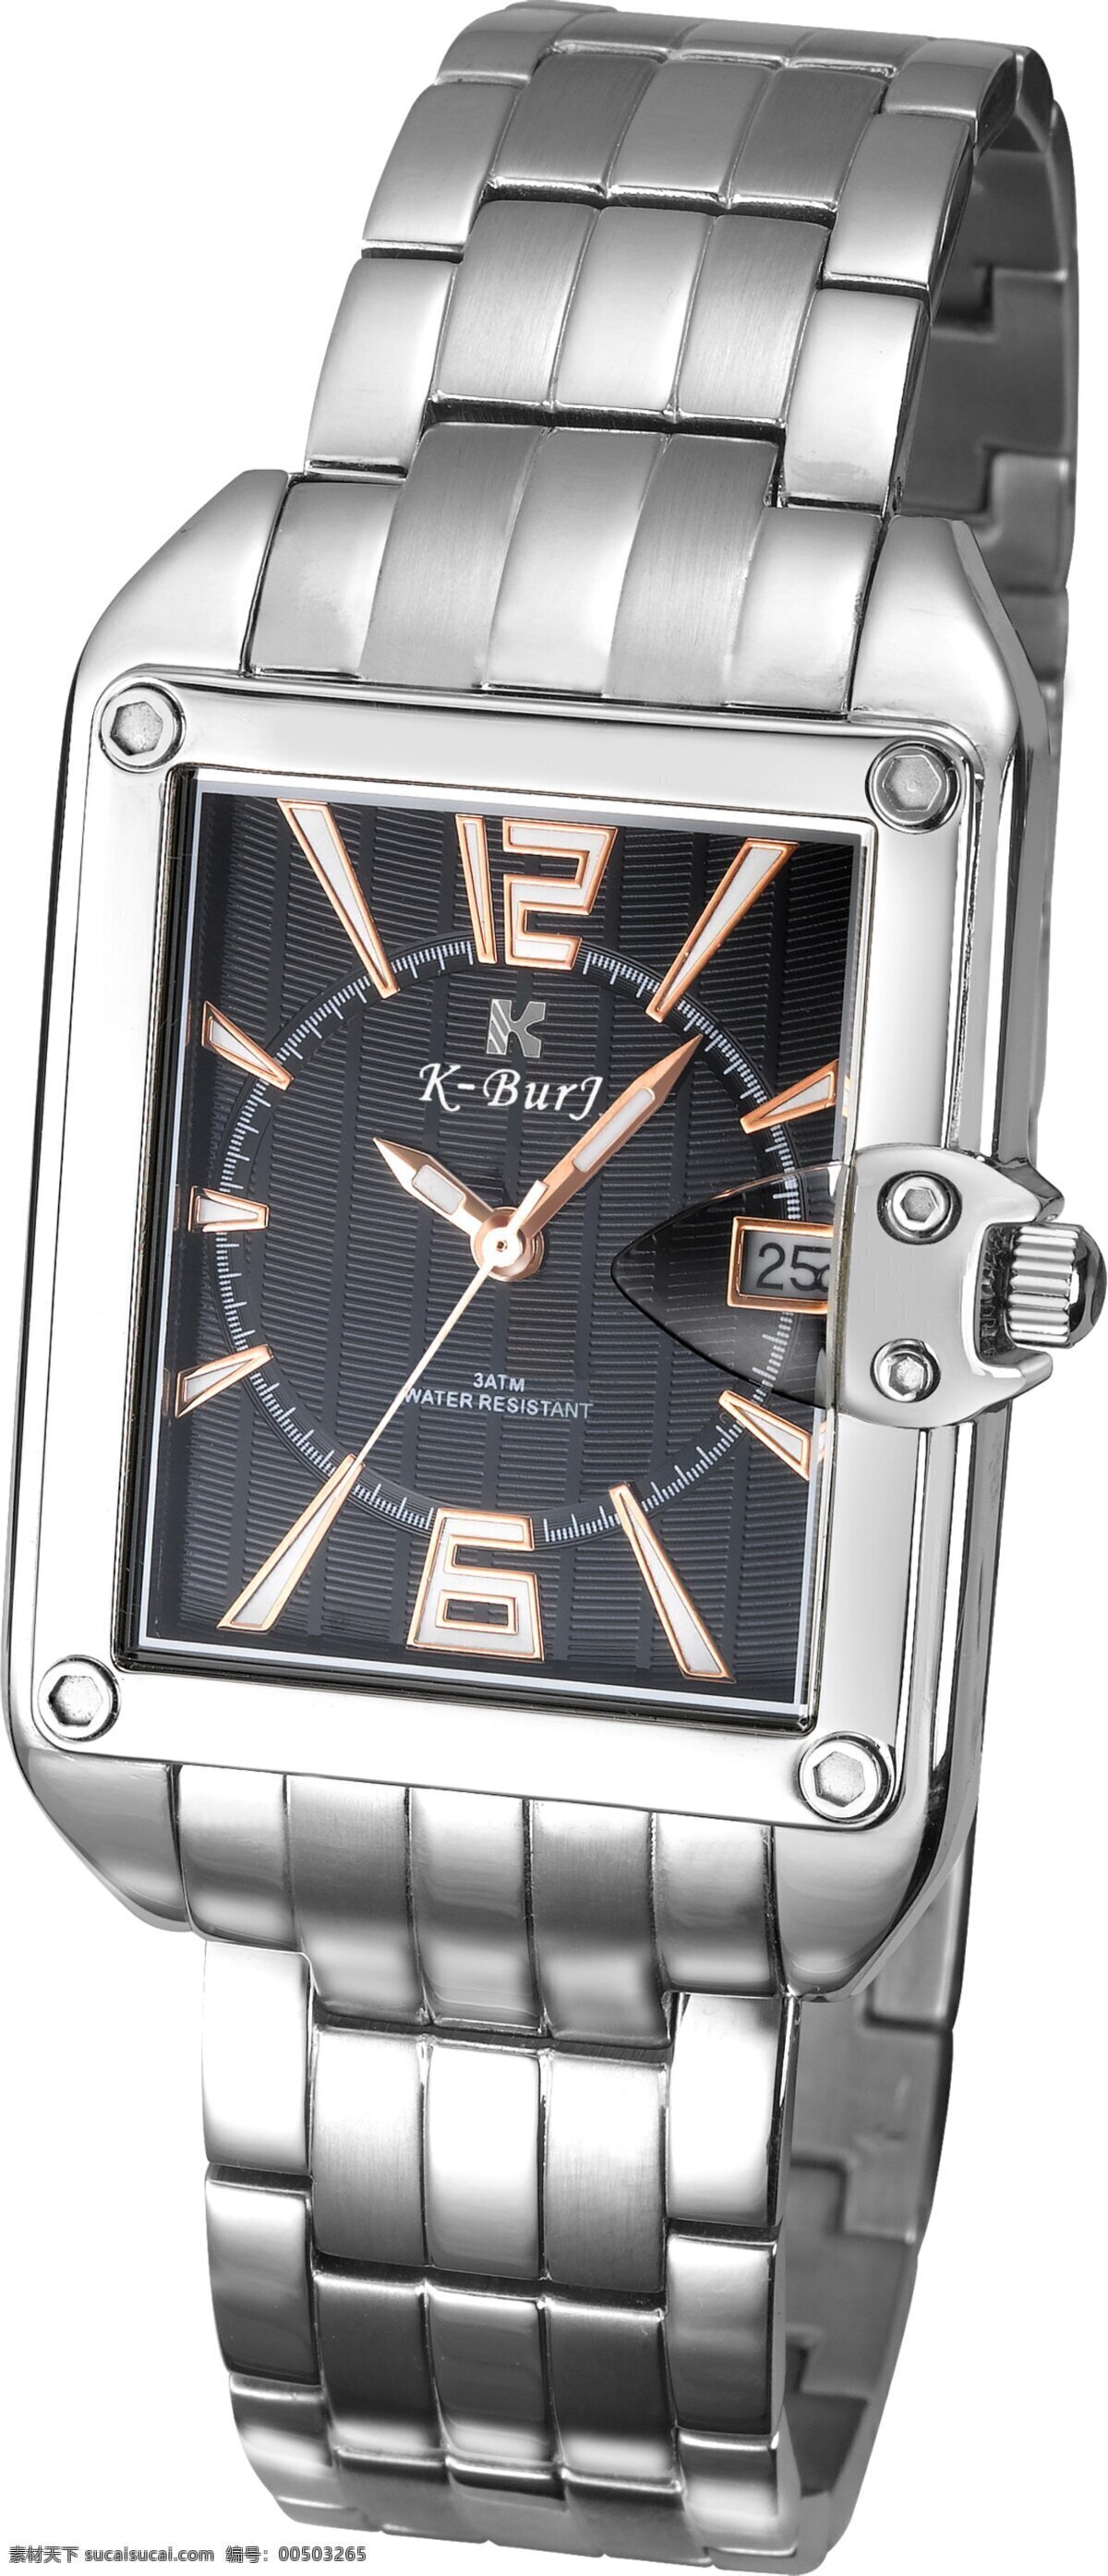 生活百科 生活素材 手表素材 新款 手表 新款手表 石英手表 机械手表 不锈钢手表 高档手表 钢 方形手表 手表摄影 psd源文件